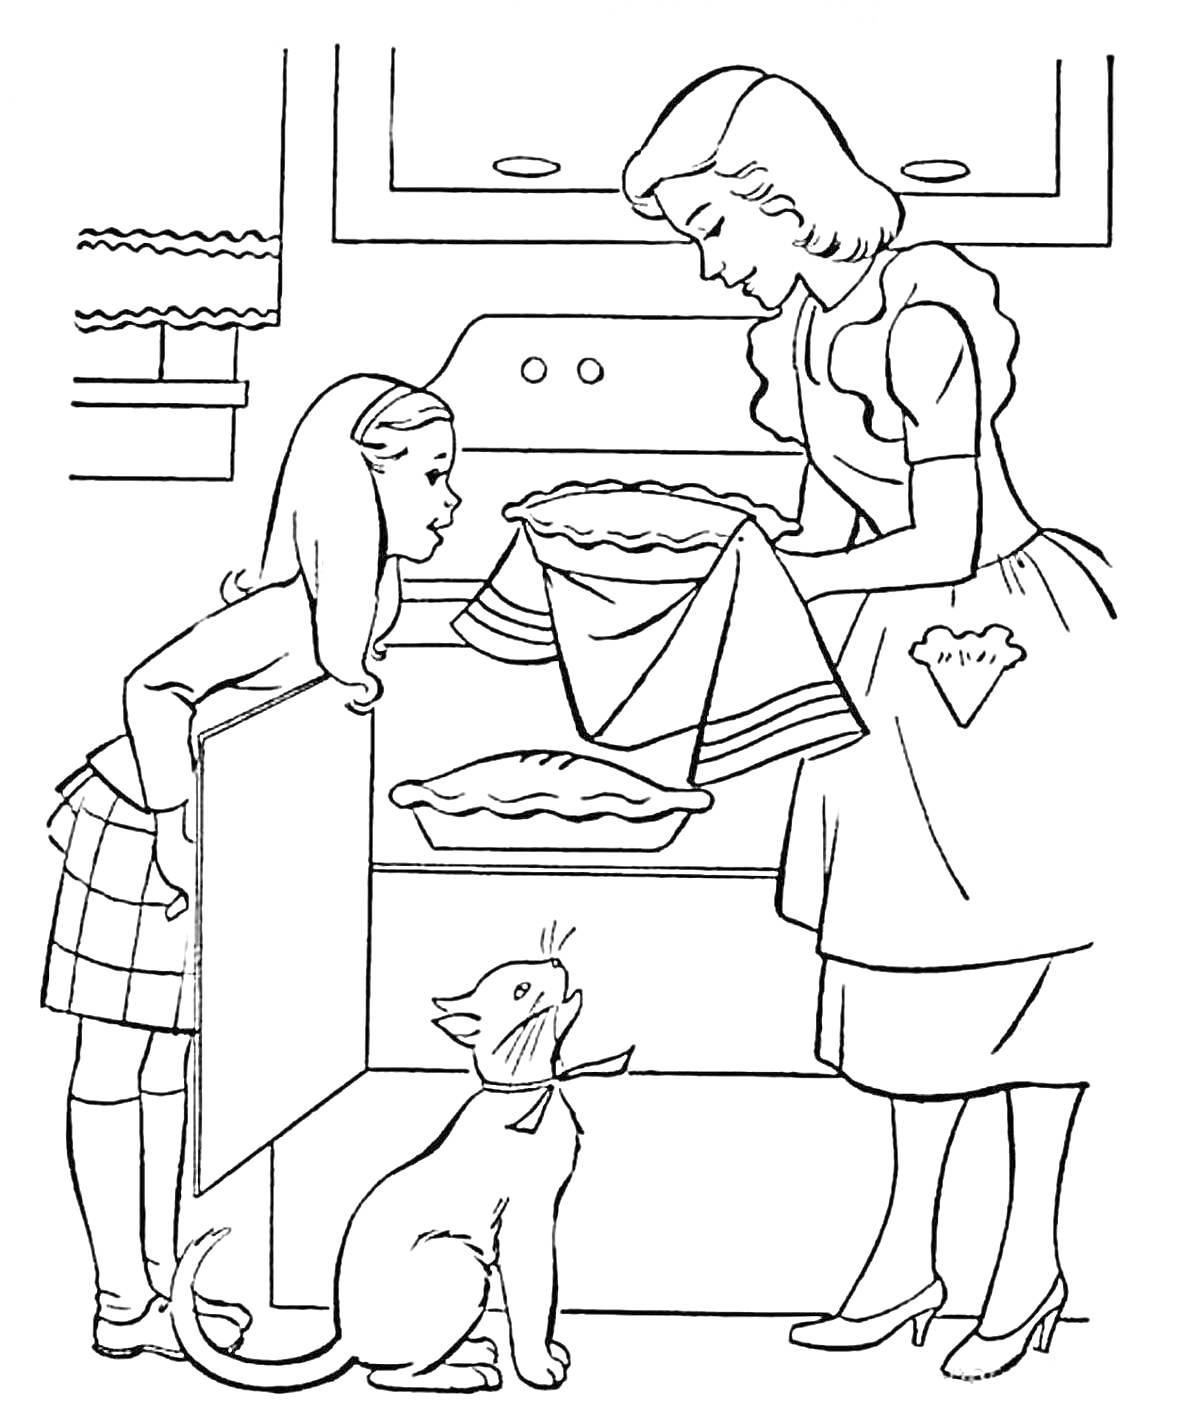 Мама достаёт пирог из духовки, ребёнок и кот наблюдают